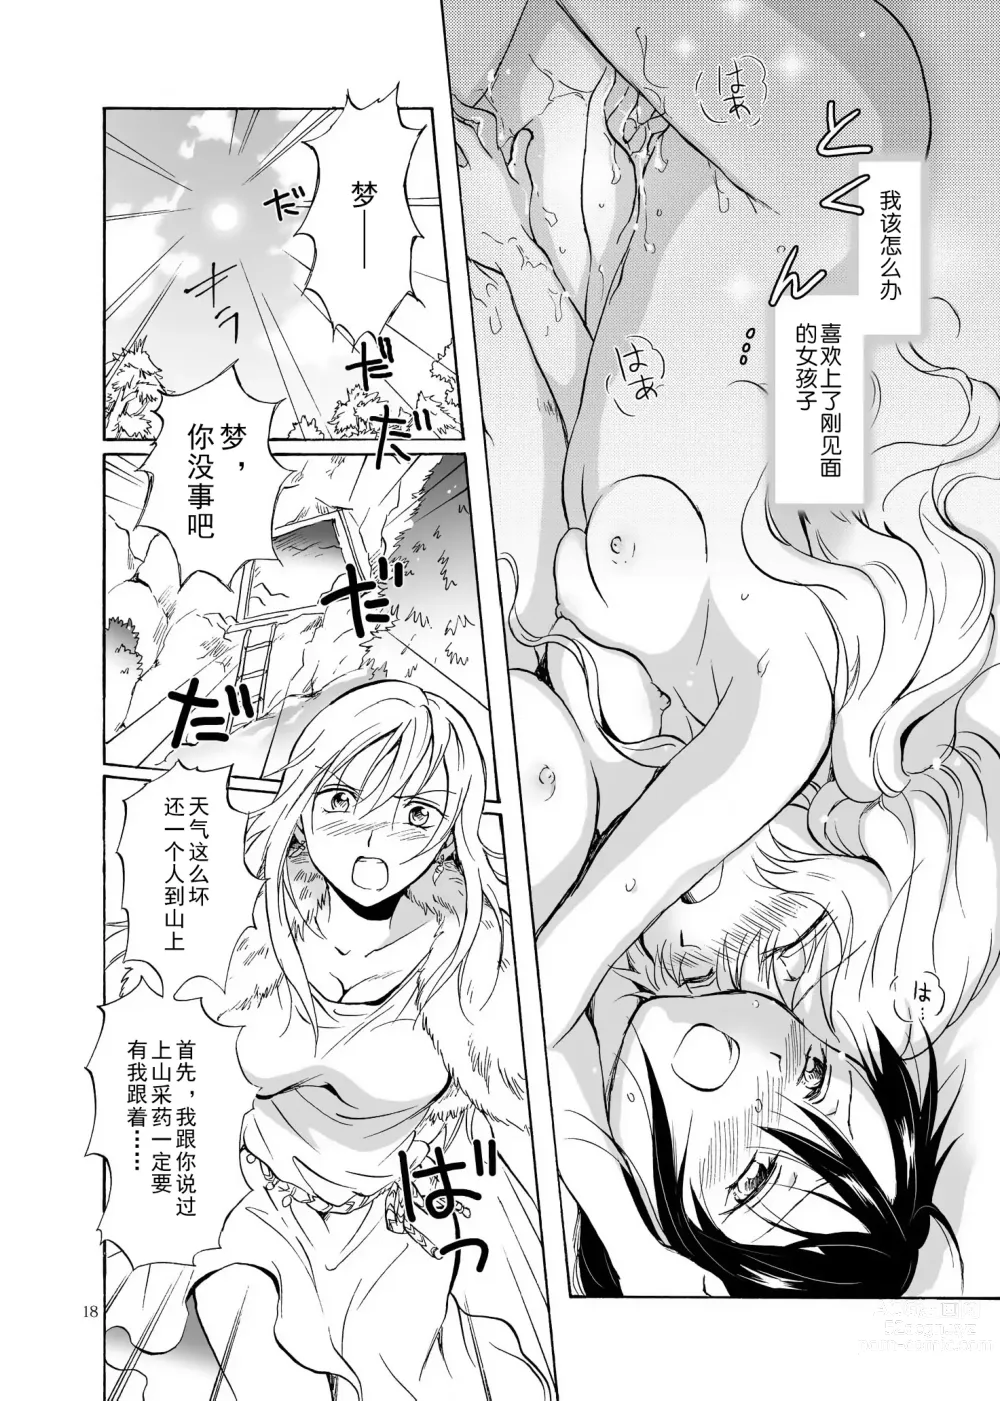 Page 18 of doujinshi EARTH GIRLS